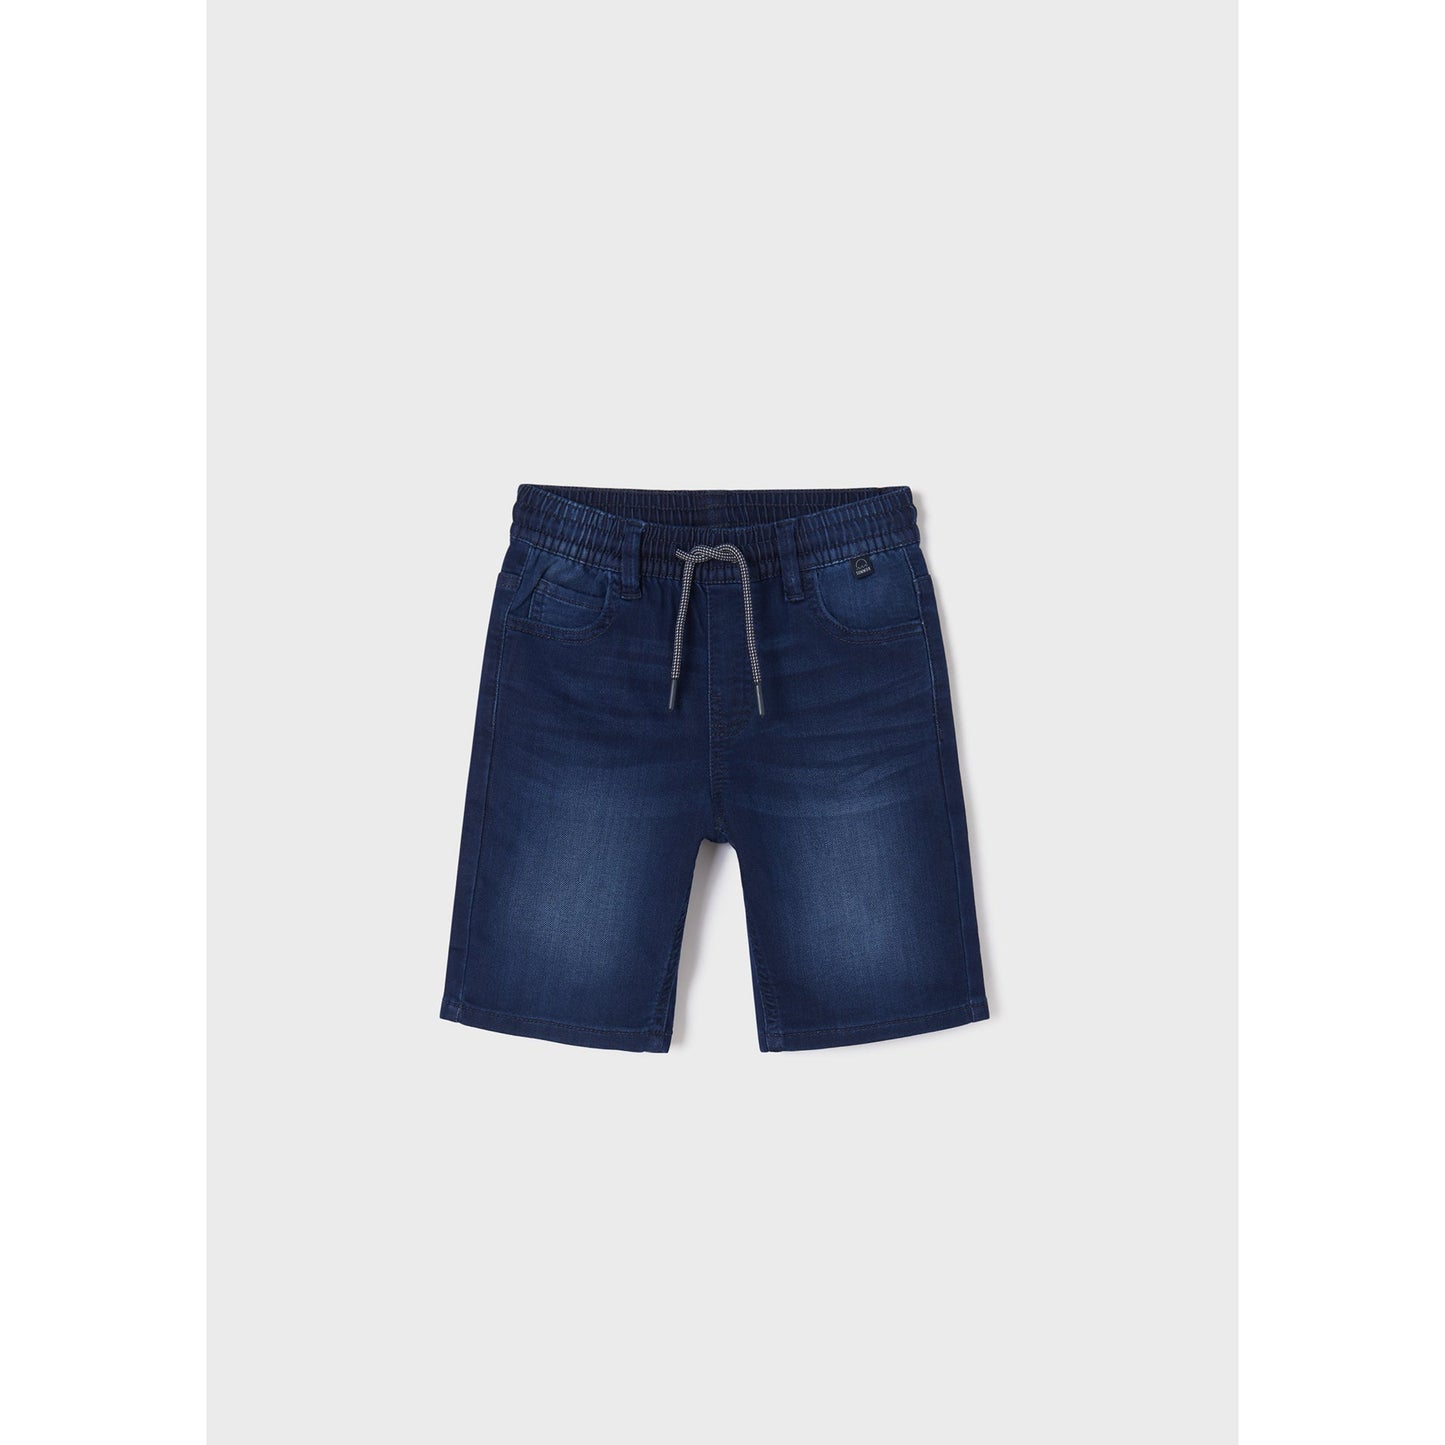 Nukutavake Bermuda Soft Denim Shorts _Medium Blue 6213-65